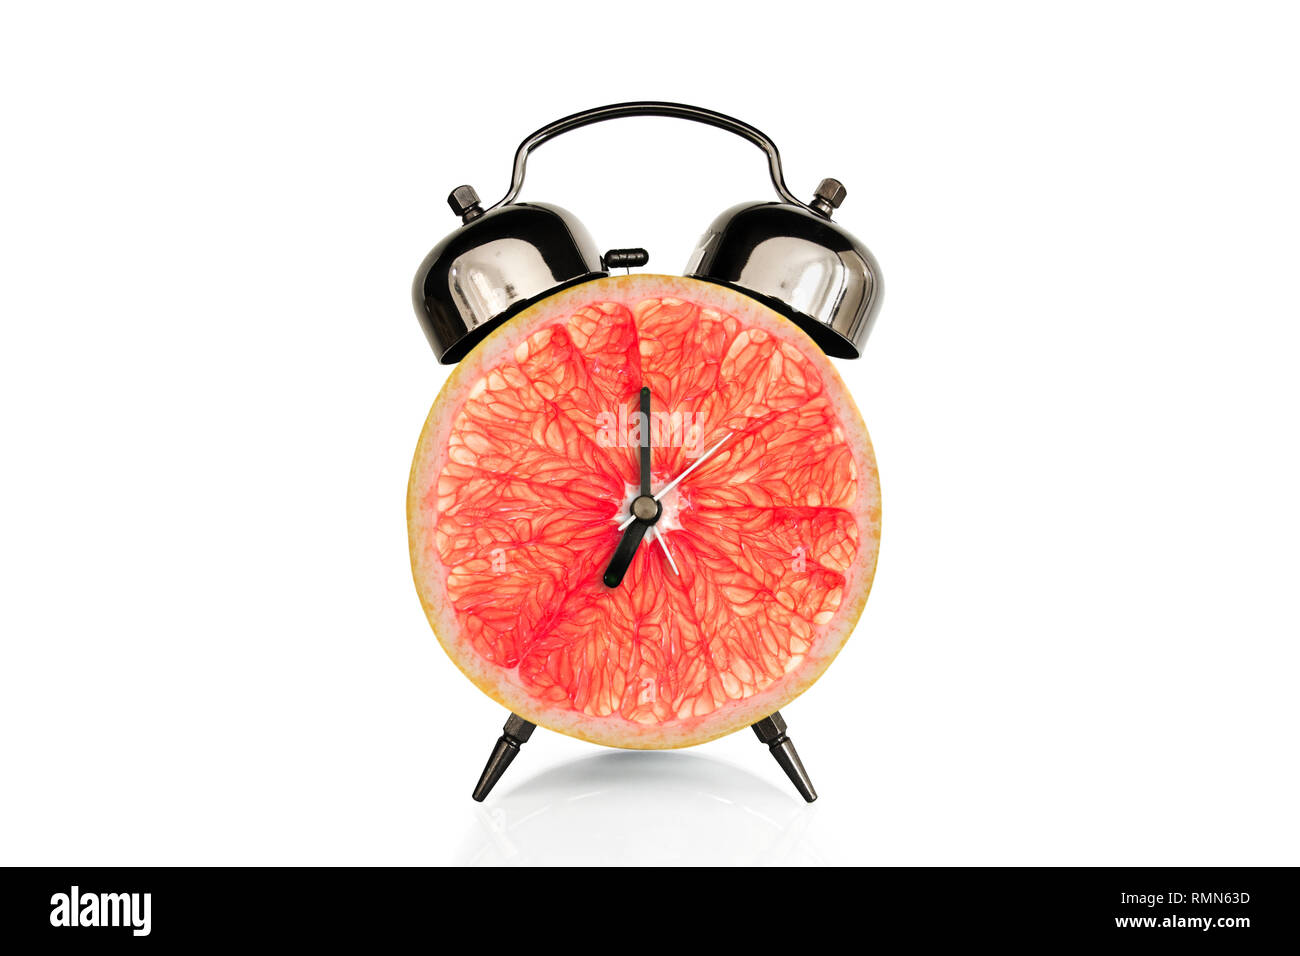 Grapefruiti tranche sur réveil, isolé sur fond blanc, de fruits et de vitamines au petit-déjeuner diététique nutrition concept Banque D'Images